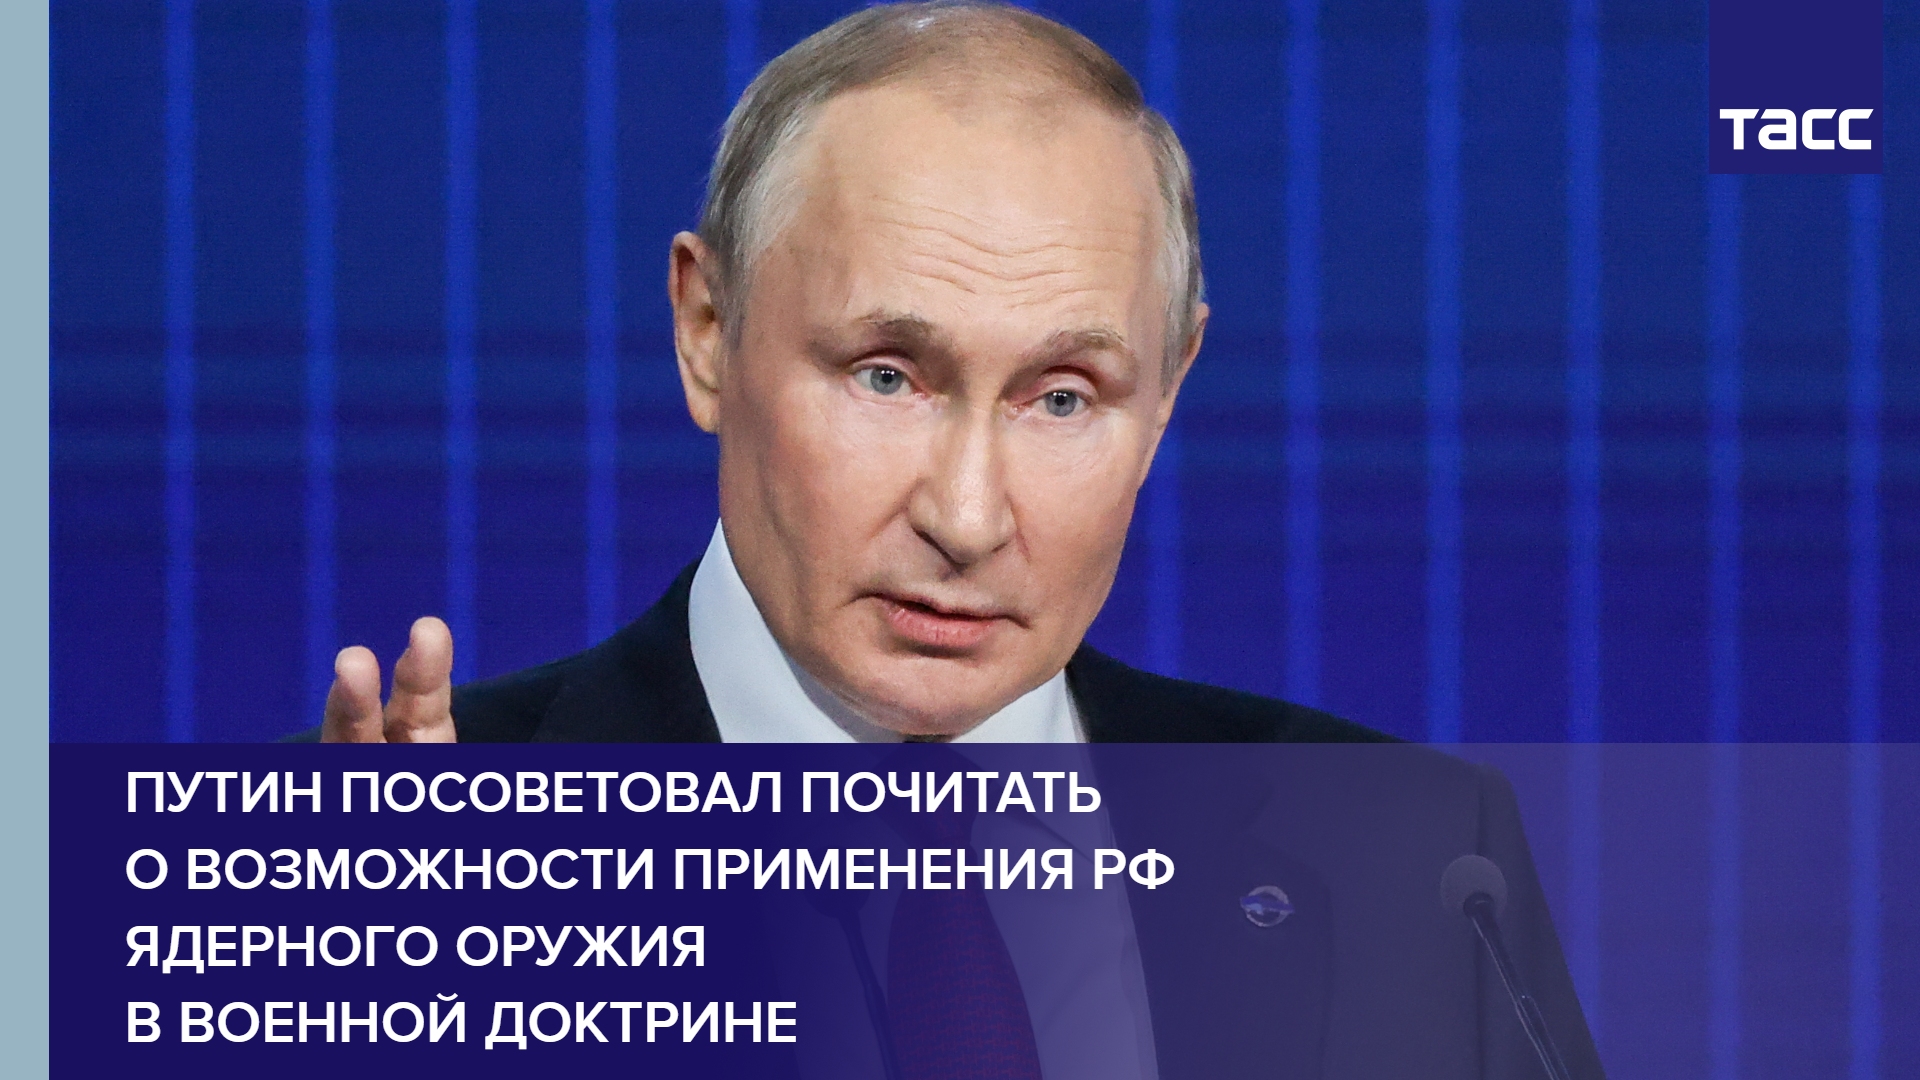 Путин посоветовал почитать о возможности применения РФ ядерного оружия в военной доктрине